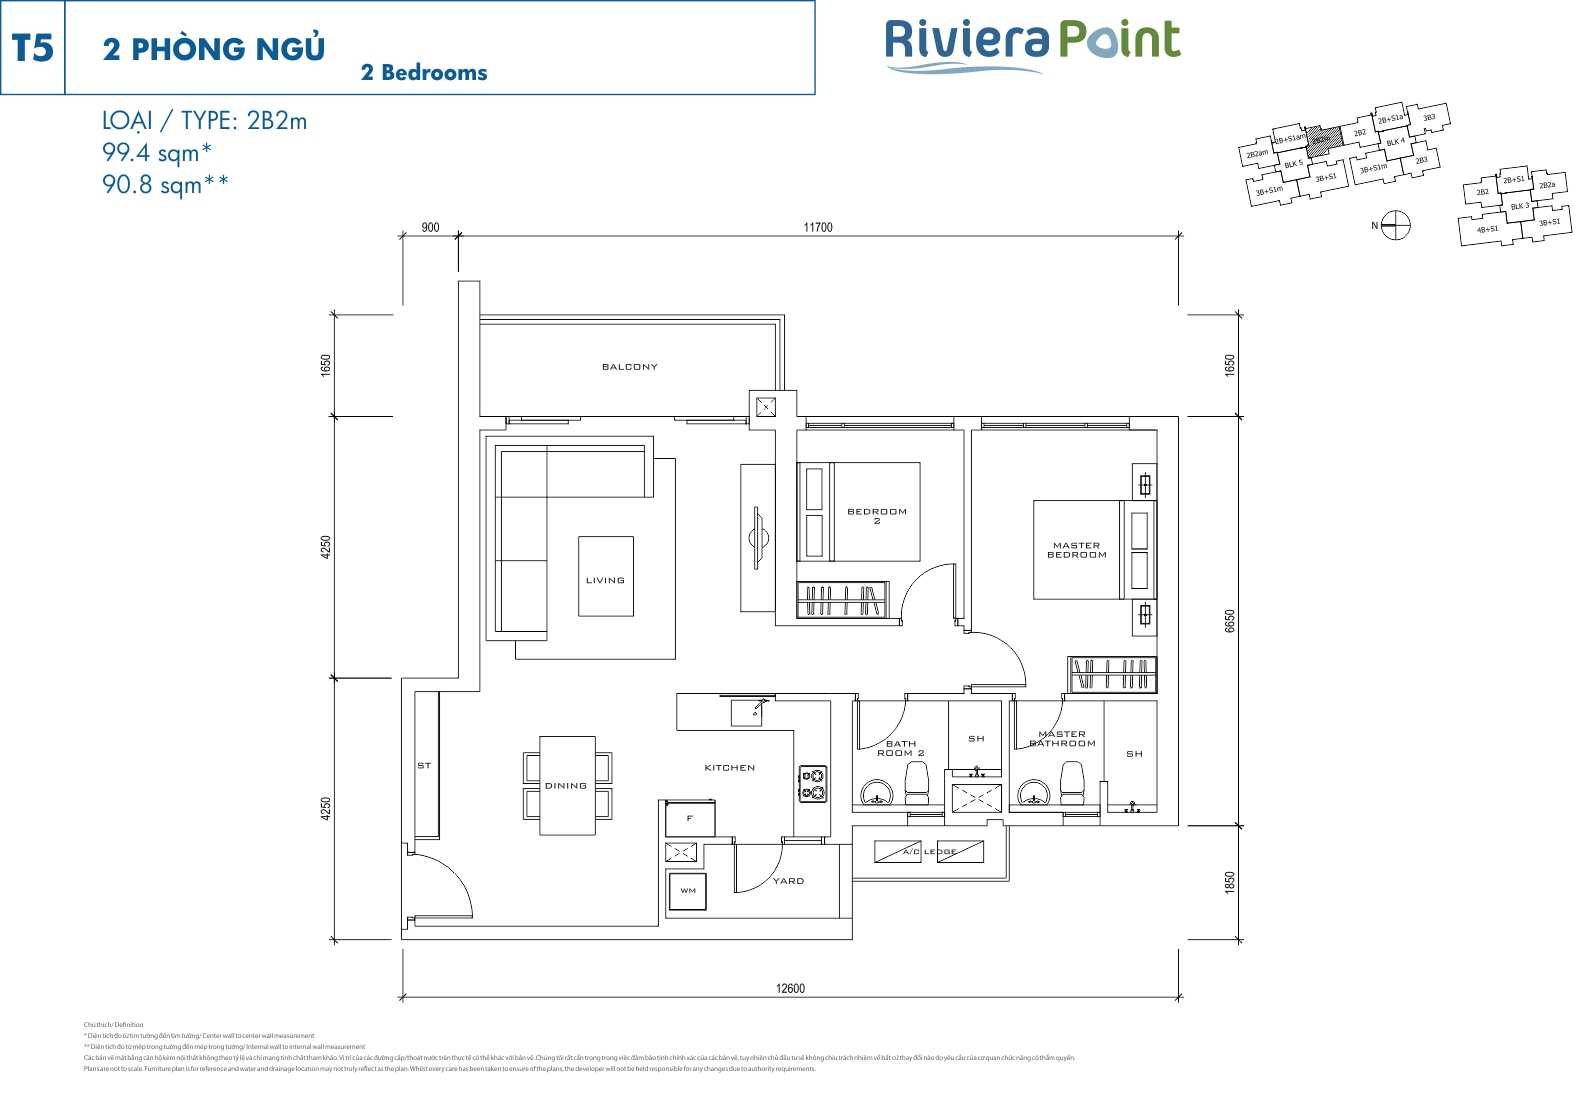 Mặt bằng căn hộ Riviera Point quận 7 layout căn 2 phòng ngủ loại 99.4m2 (2PN)- T5 - 2B2m